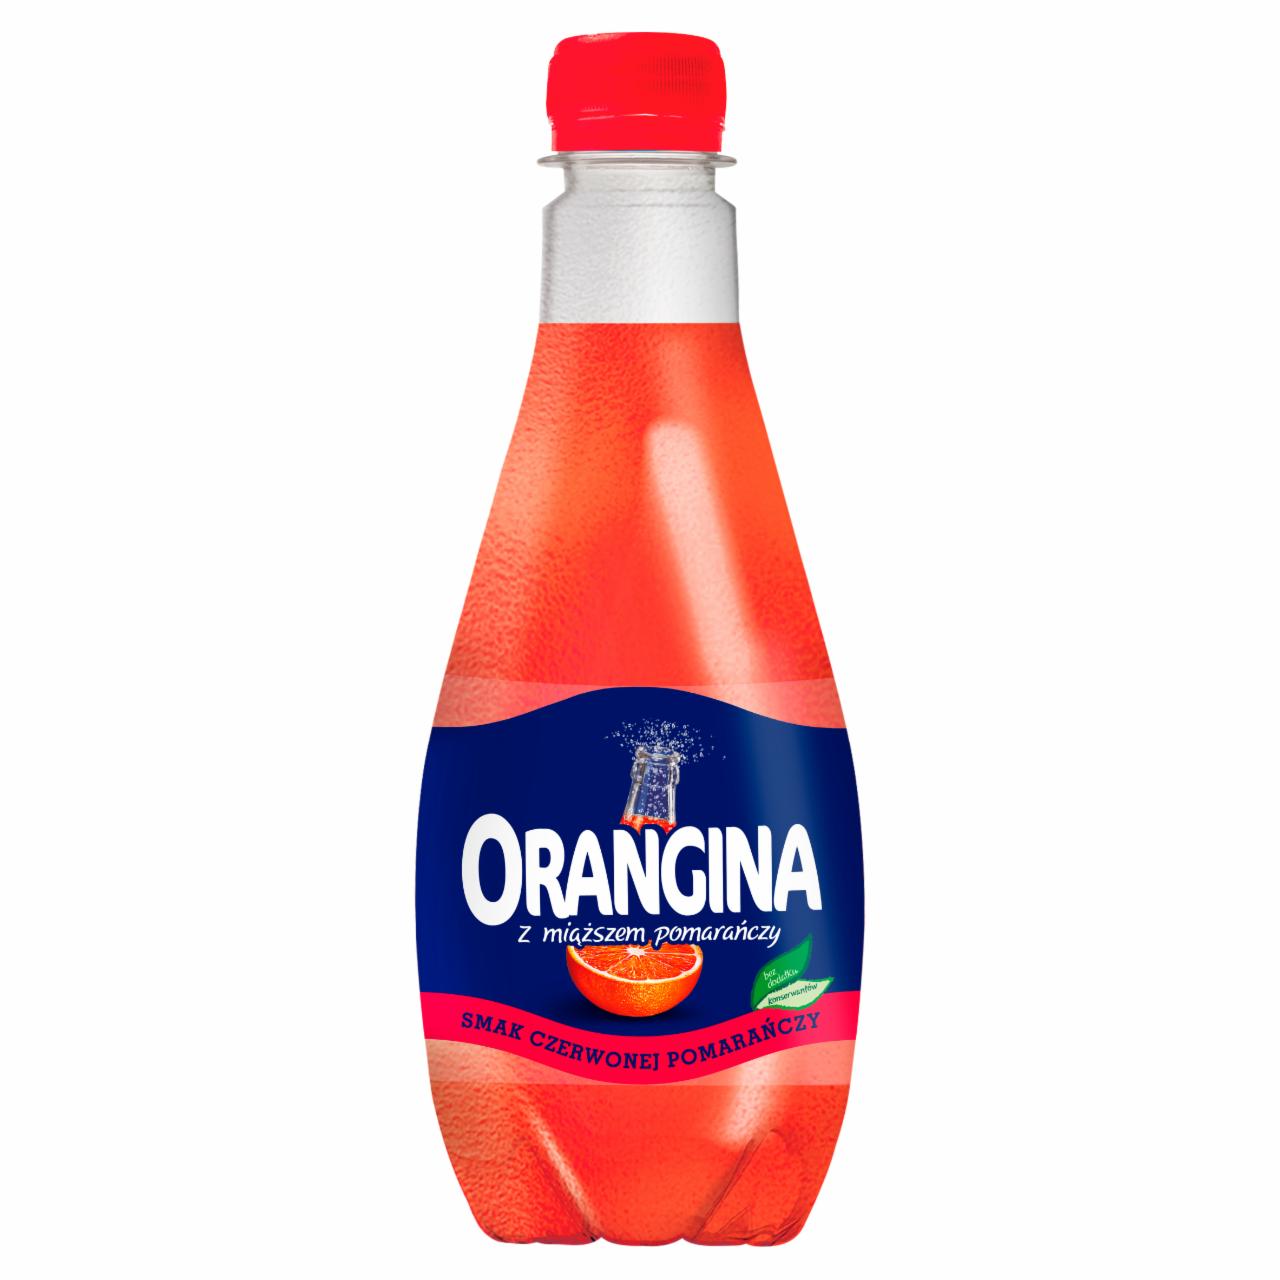 Zdjęcia - Orangina Napój gazowany smak czerwonej pomarańczy 0,5 l